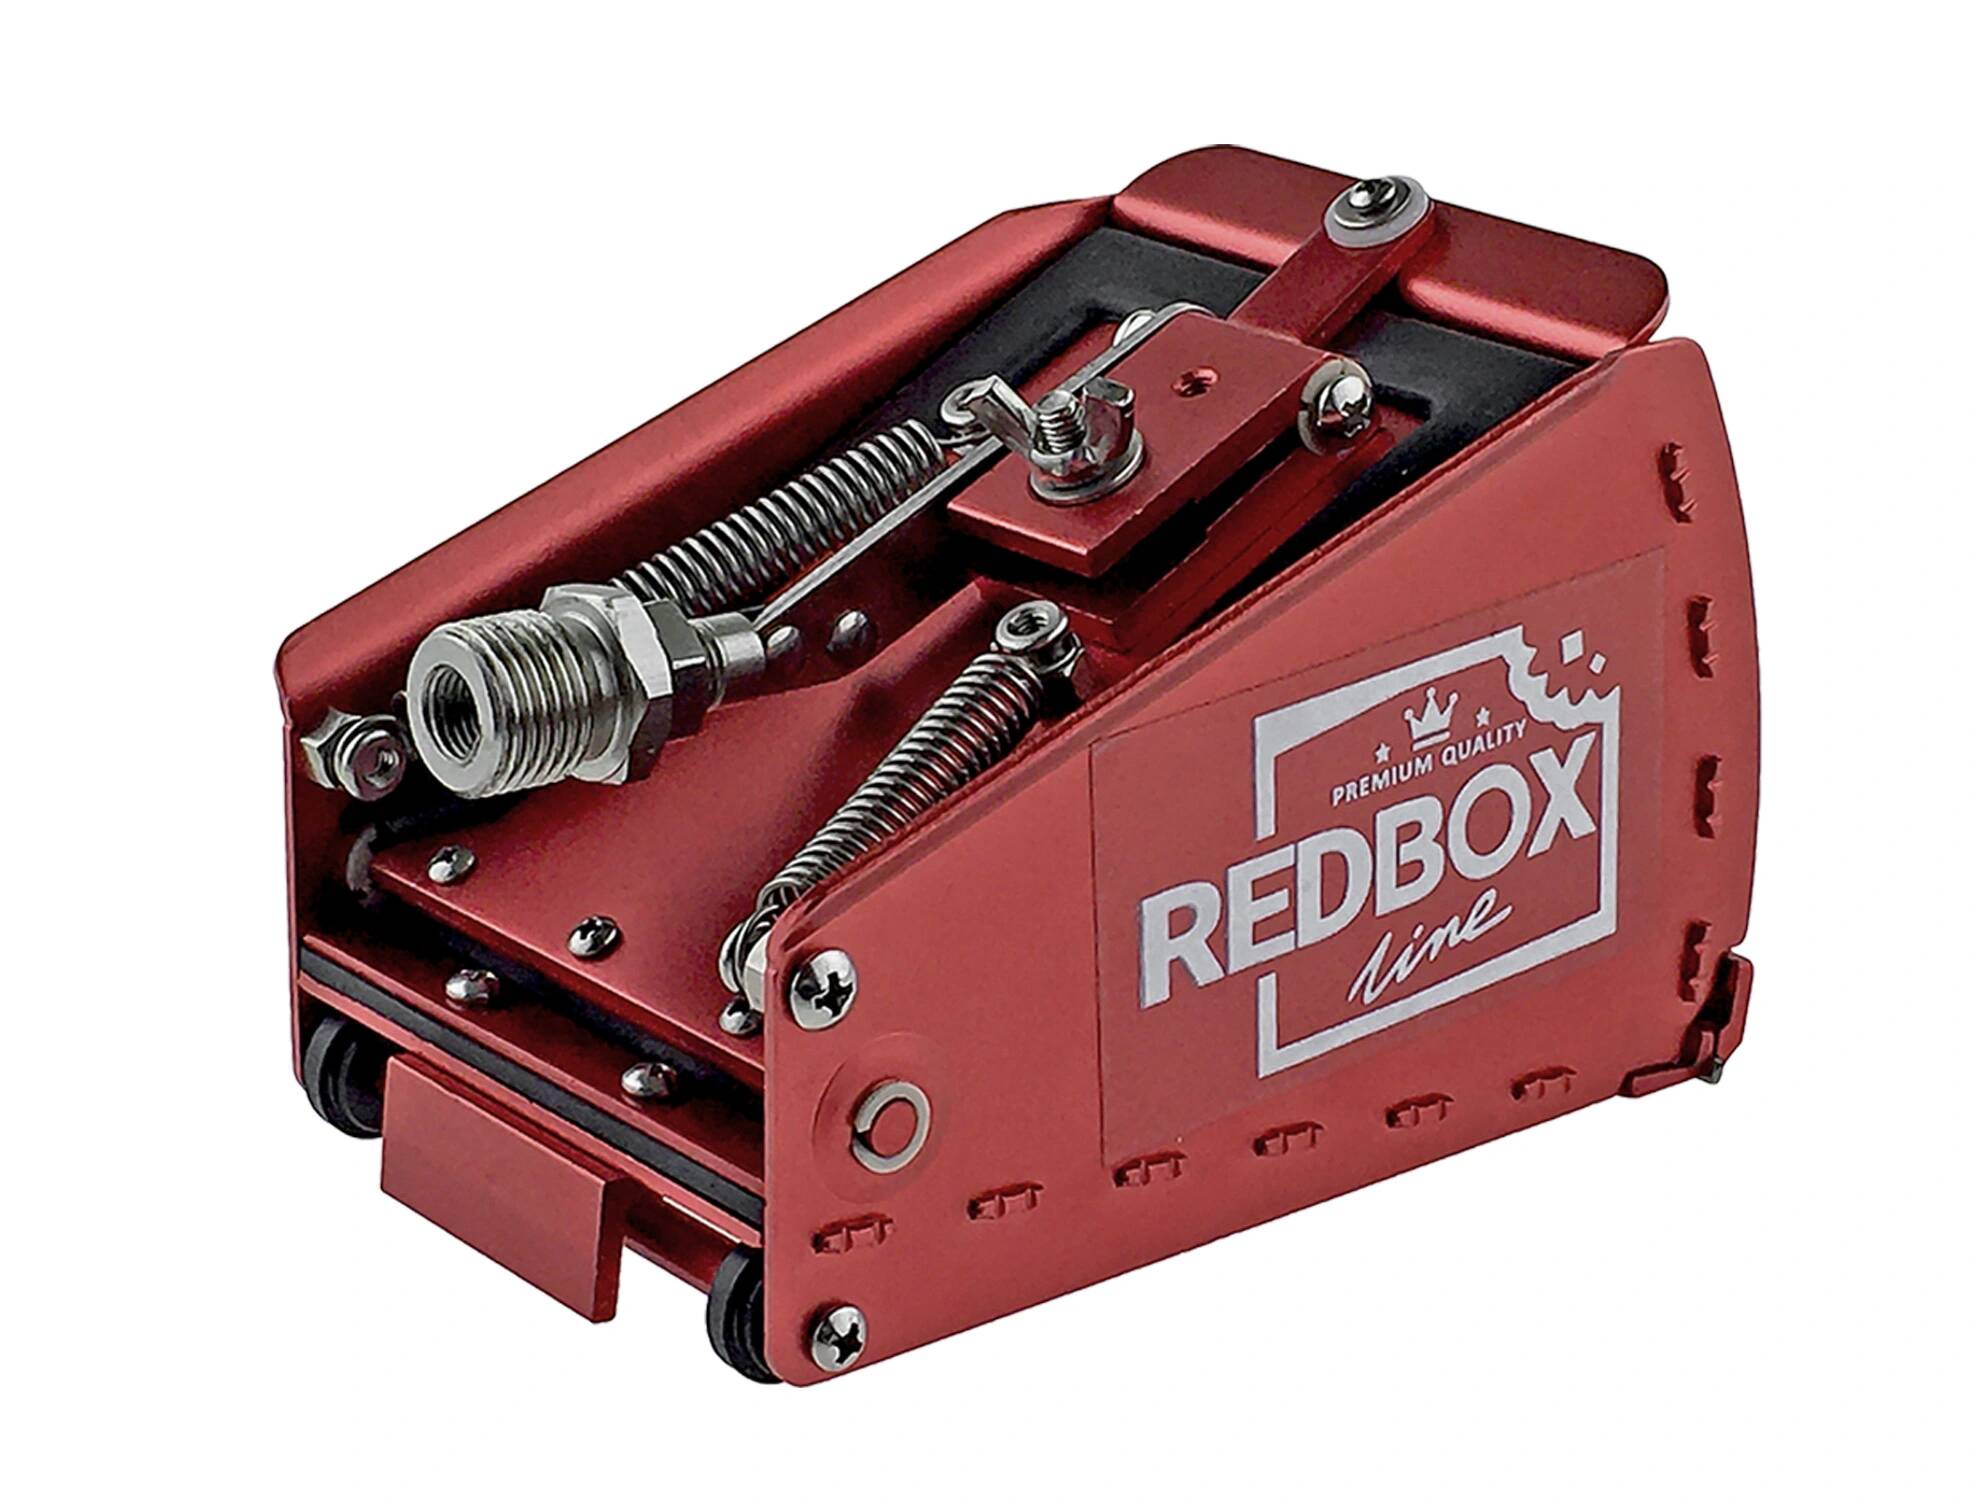 - śrub i zakrywania 8 do Skrzynka RedBox RedBox 5 wkrętów cm Skrzynki level